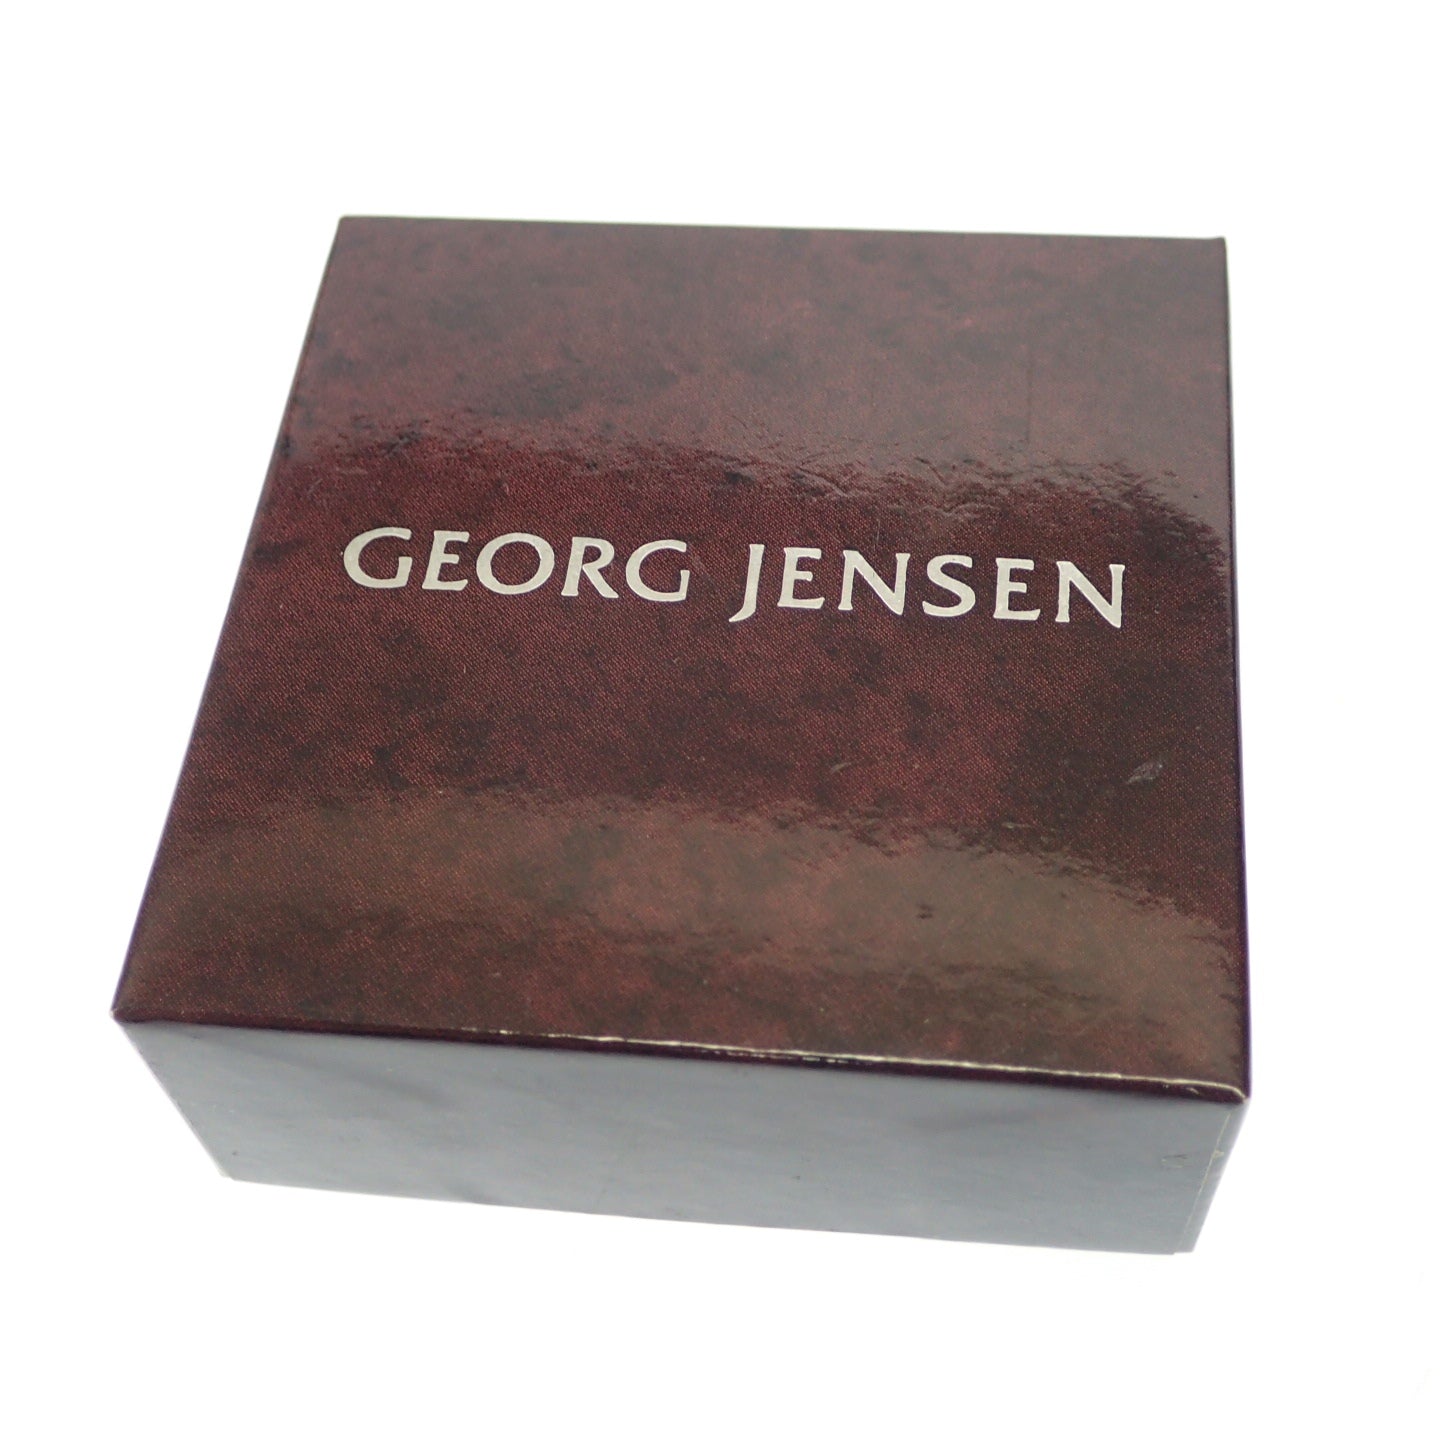 状况良好 ◆ Georg Jensen 胸针 葡萄色 217A 925S 银色 带盒子 GEORG JENSEN [AFI15] 